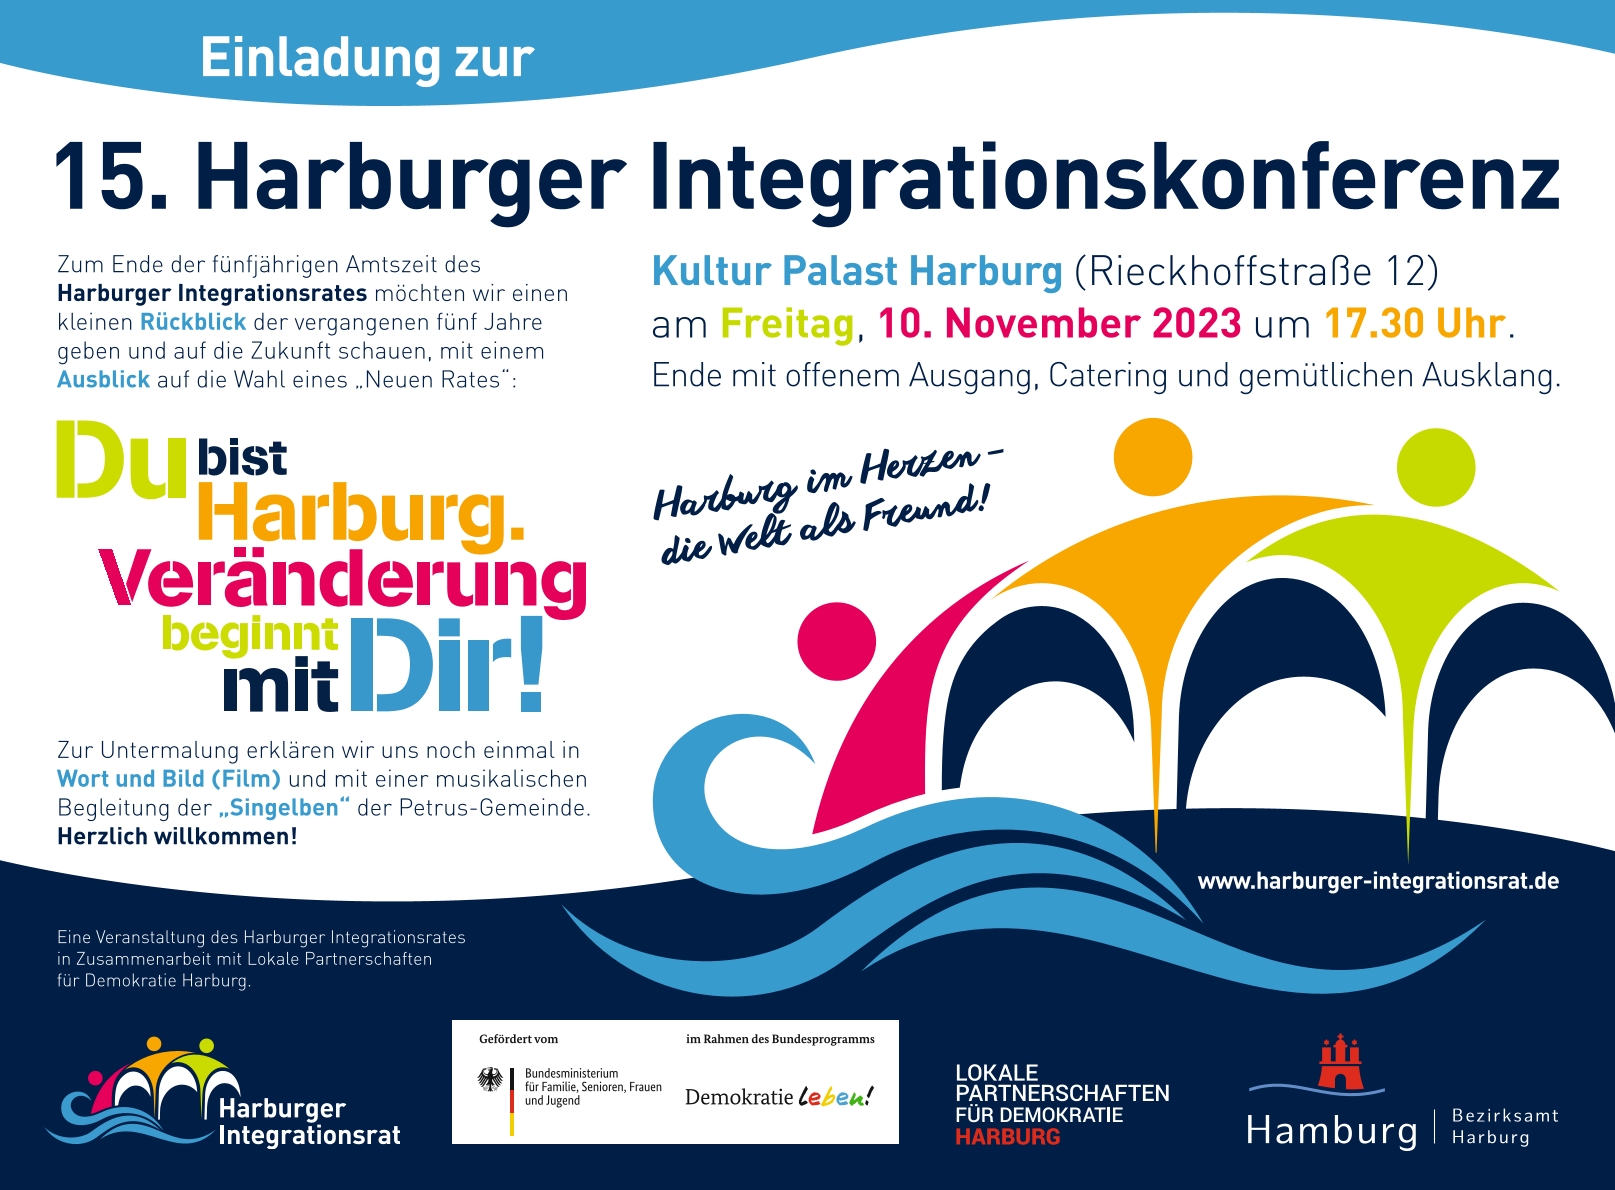 harburger integrationskonferenz